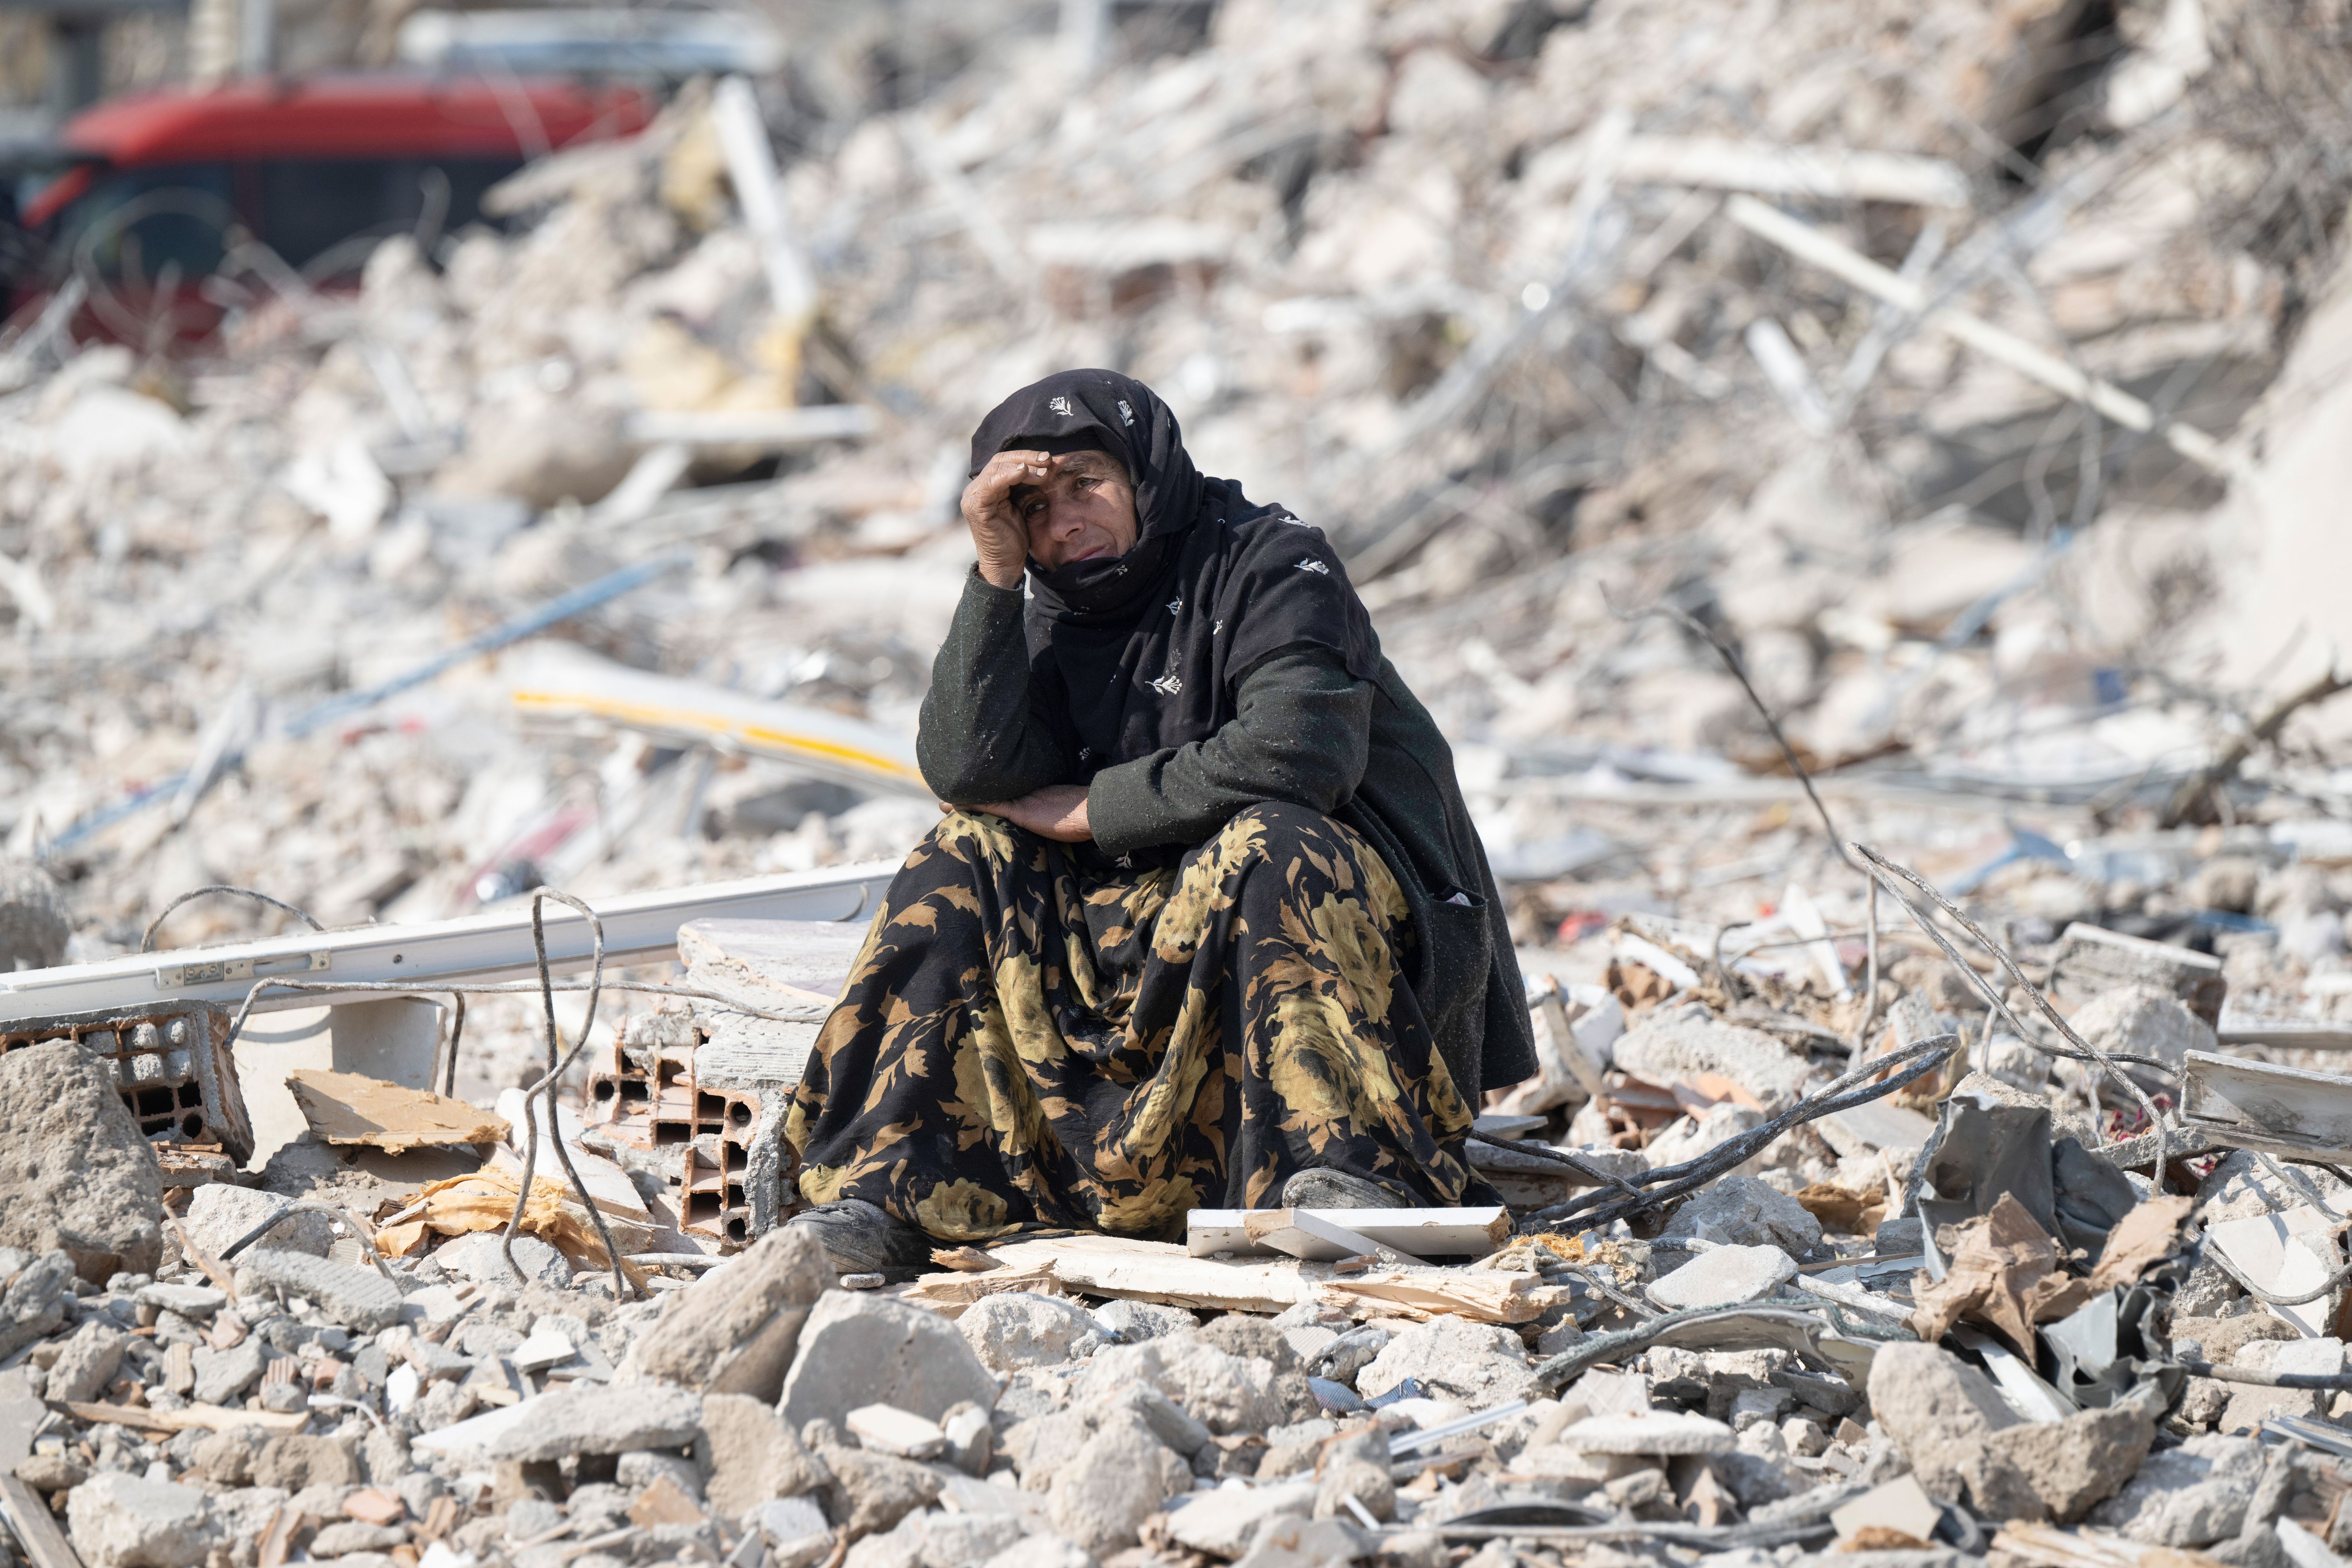 Am 6. Februar werden die Türkei und Nordsyrien von einem schweren Erdbeben heimgesucht. Fast 60.000 Menschen sterben, mehr als 125.000 werden verletzt.